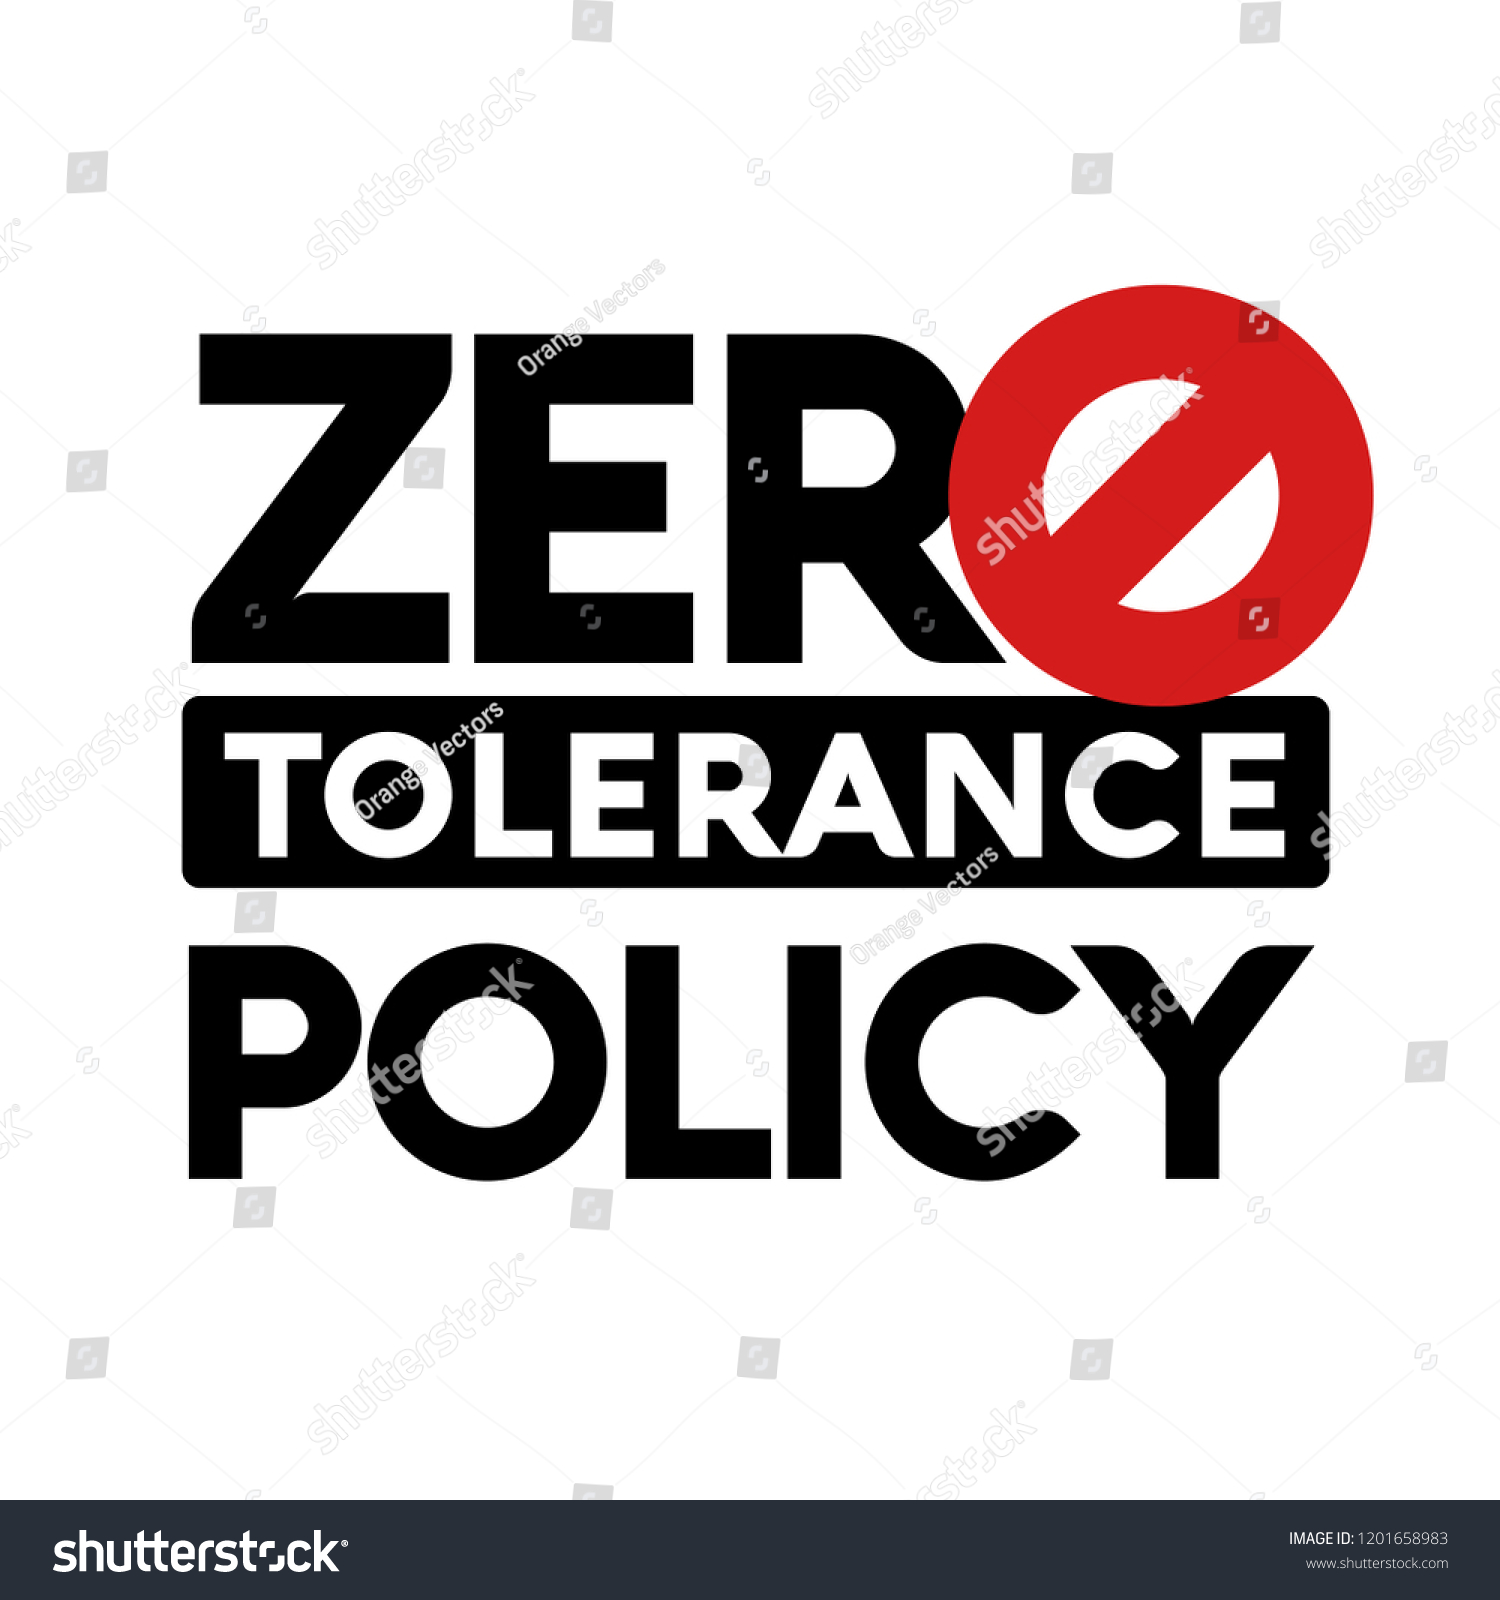 434 Zero Tolerance Policy Immagini Foto Stock E Grafica Vettoriale Shutterstock 4925